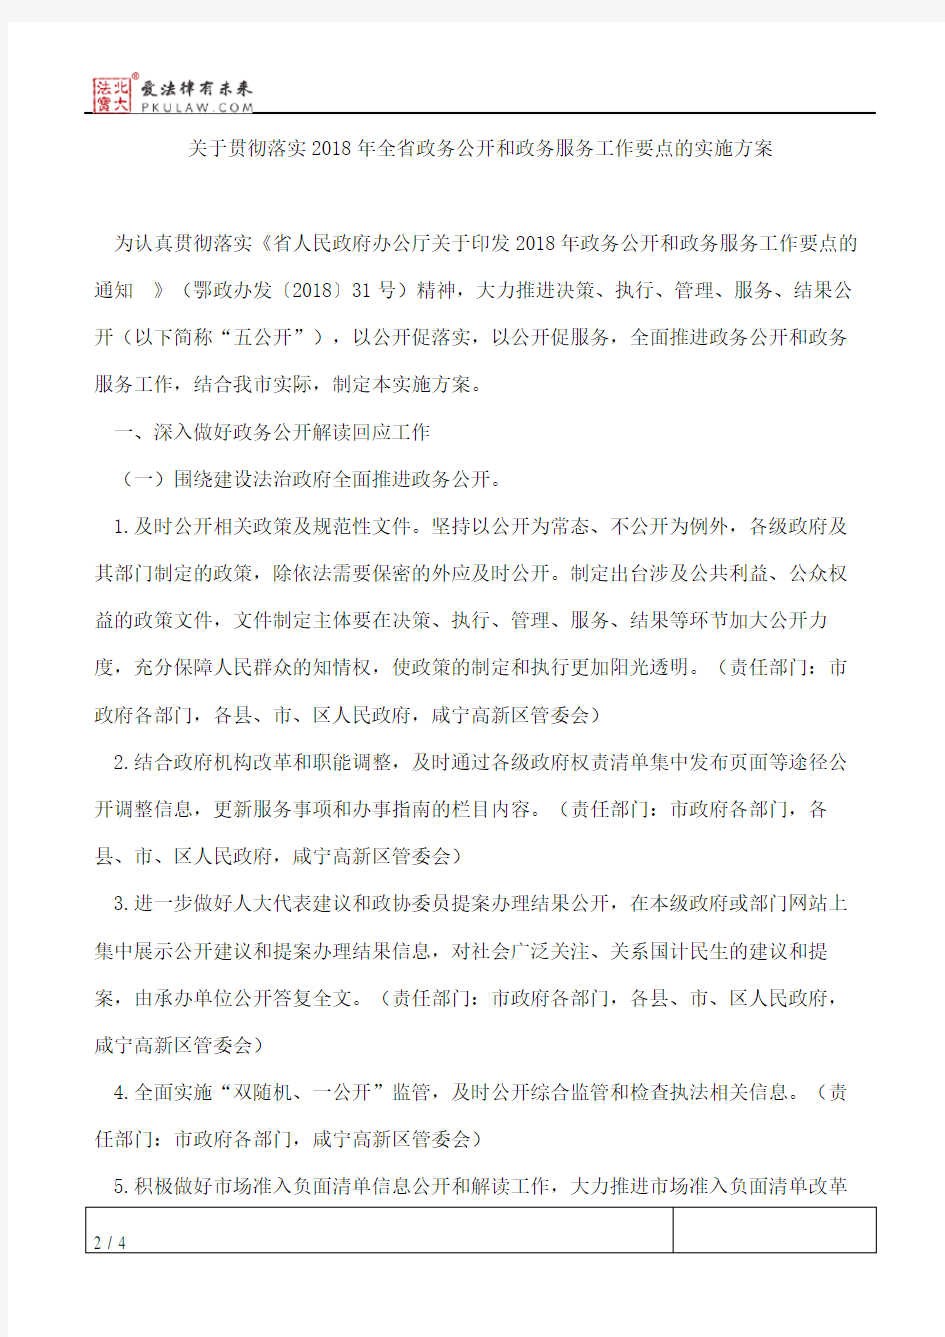 咸宁市人民政府办公室印发关于贯彻落实2018年全省政务公开和政务